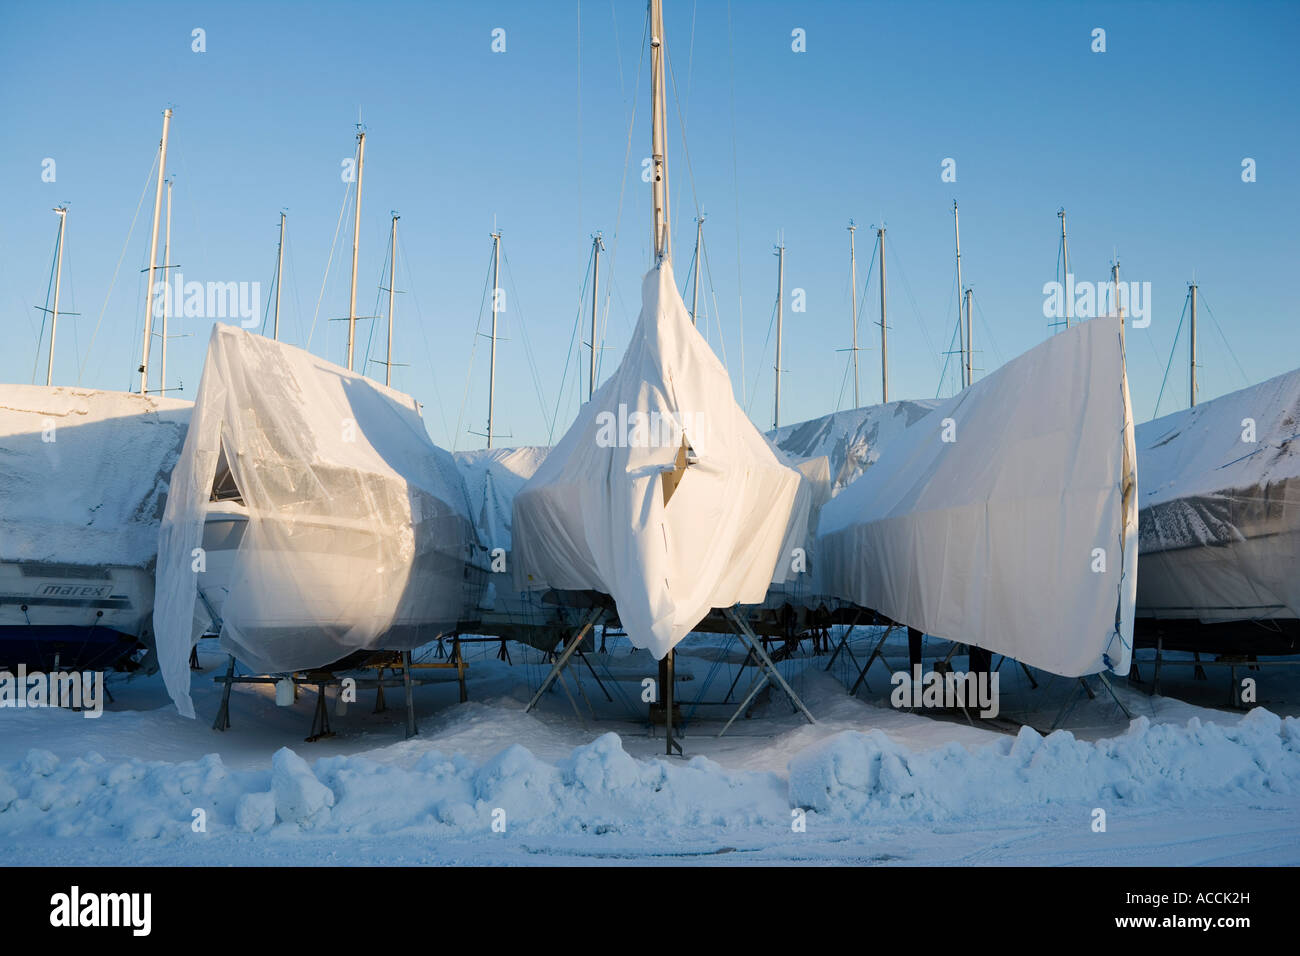 Bateaux à voile sur terre dans l'hiver. Banque D'Images